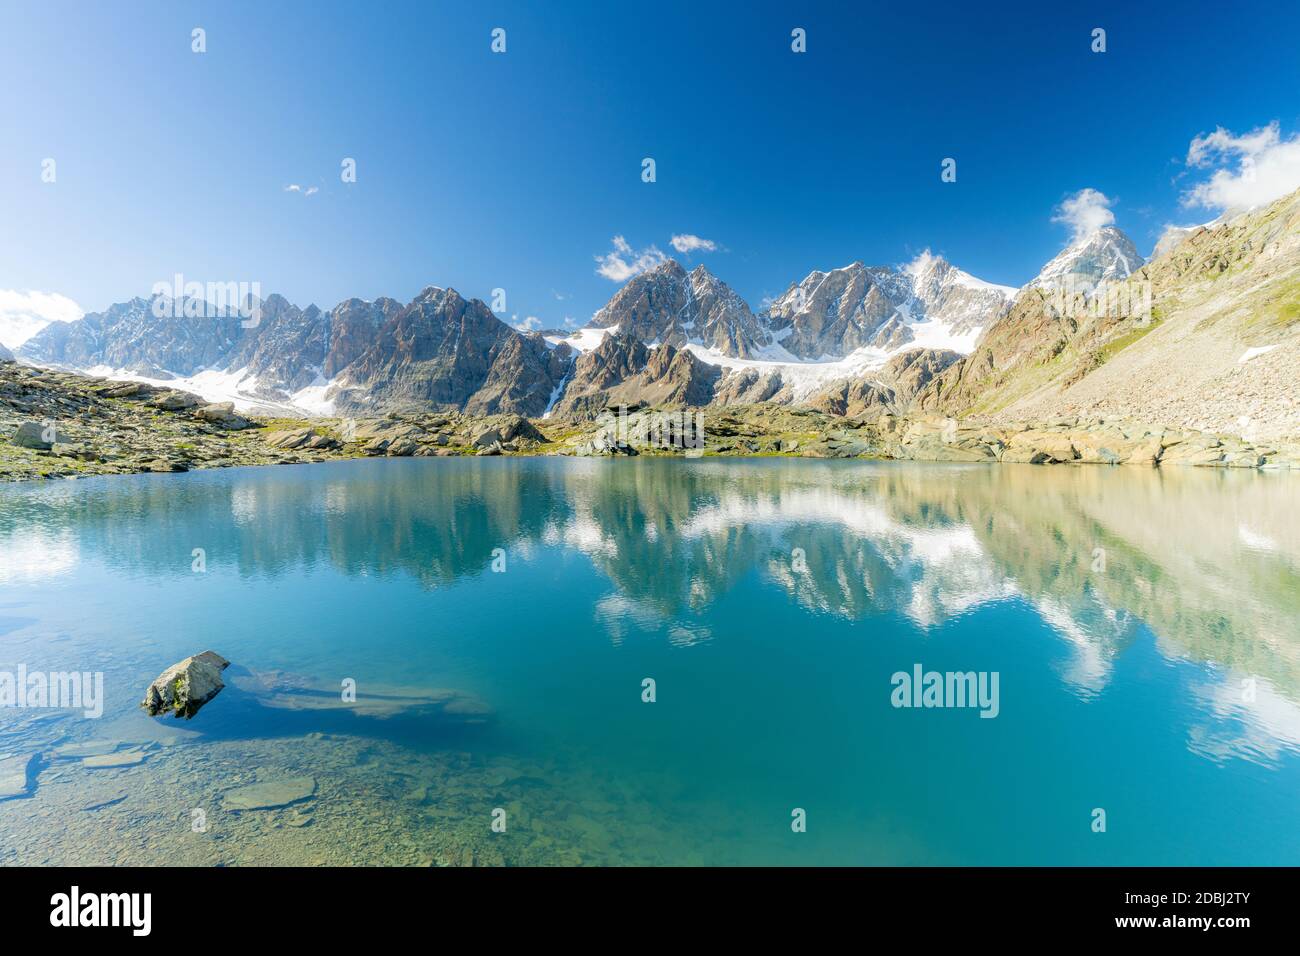 Le montagne del Gruppo Bernina si specchiano nelle acque limpide del lago di Forbici, Valmalenco, Valtellina, provincia di Sondrio, Lombardia, Italia, Europa Foto Stock